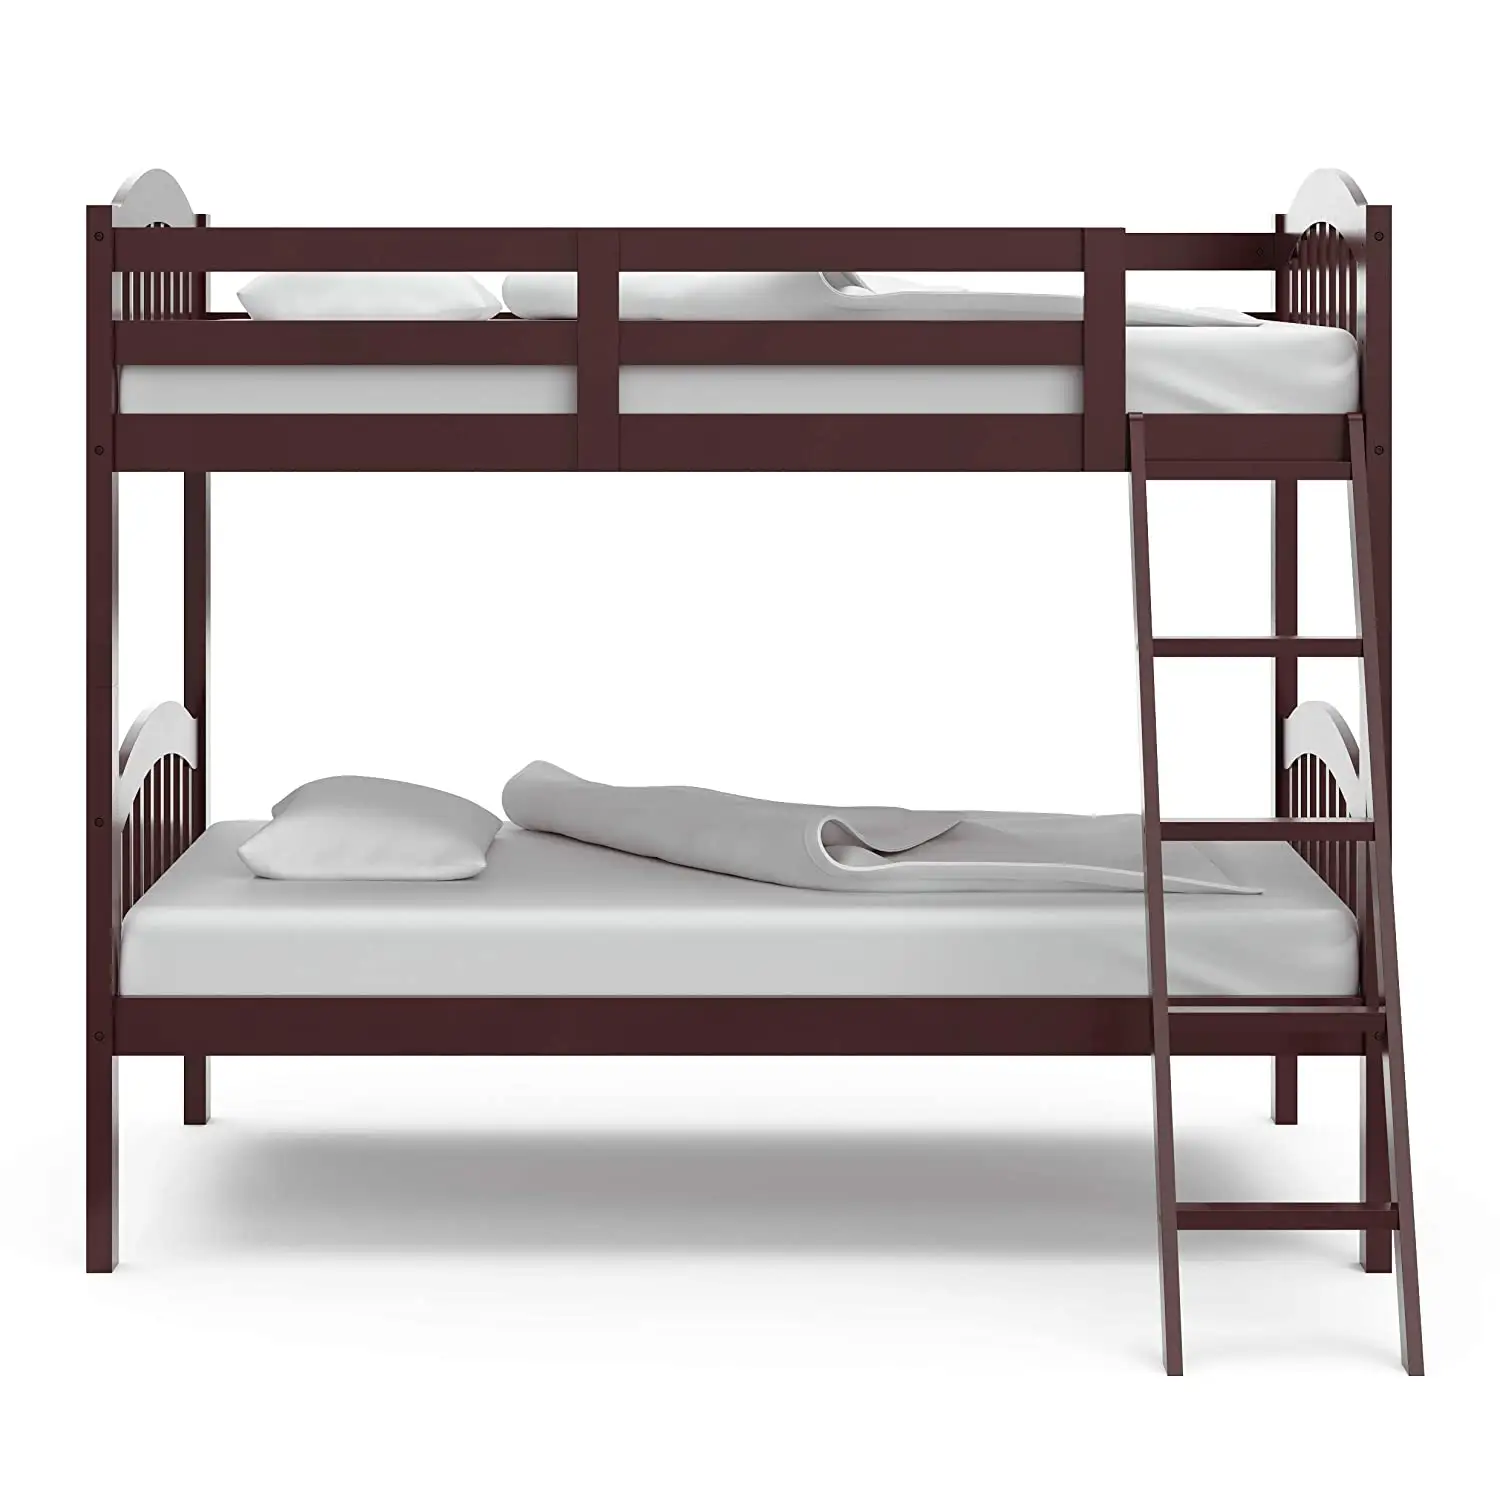 Двухместная кровать-ЛОФТ, Blue & Dorel Living Milton Junior Twin Loft Bed, кровать темного цвета